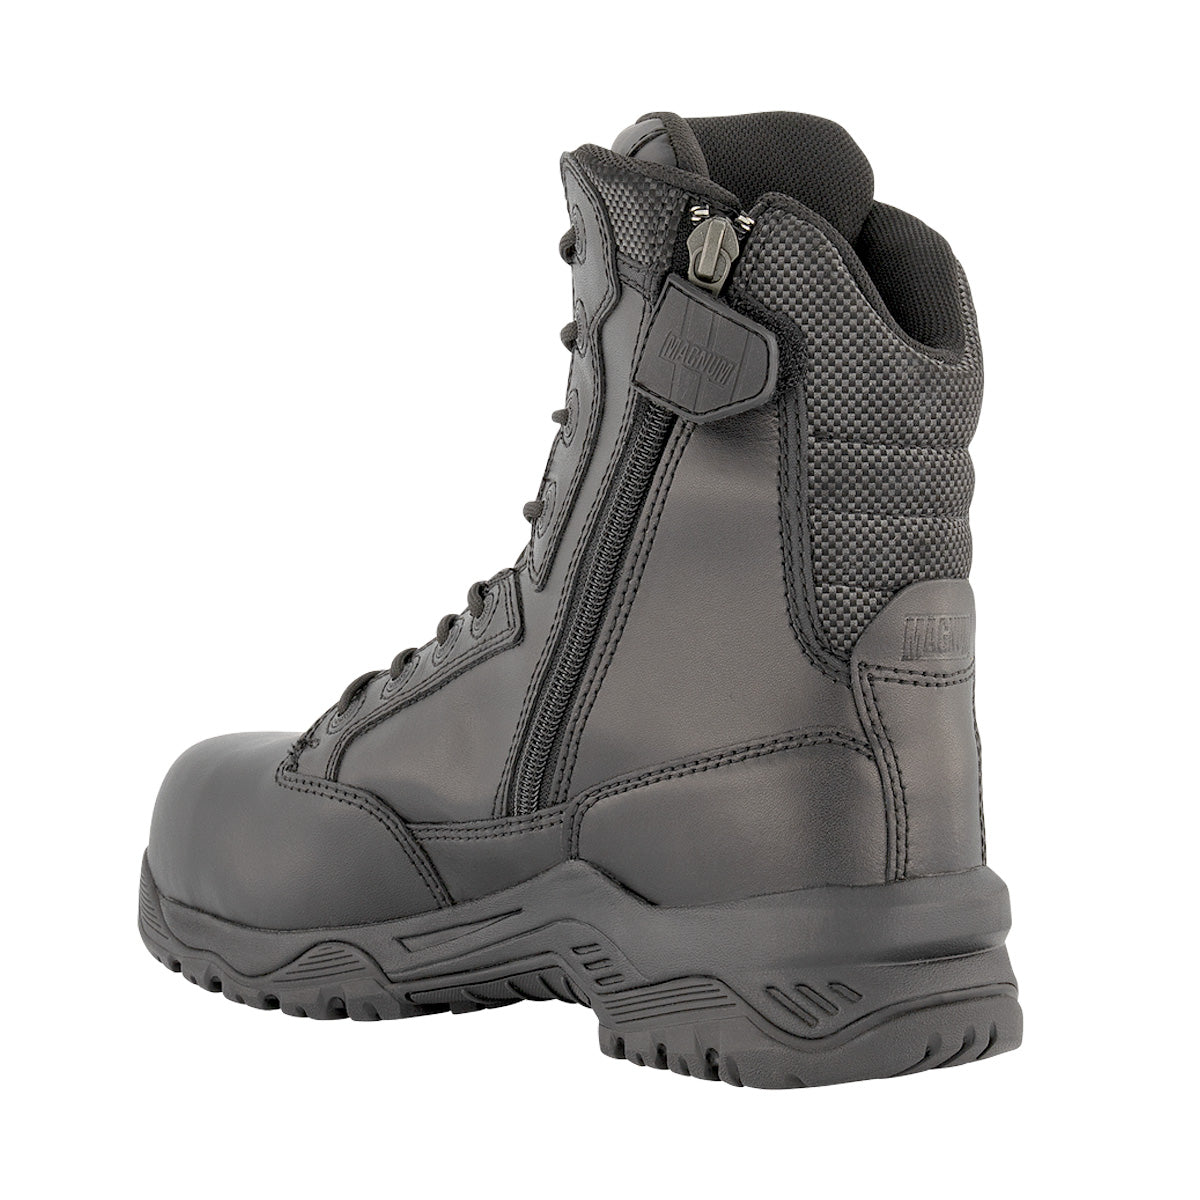 Magnum Strike Force 8.0 Leather Side-Zip Waterproof iShield Boot 50j Black Footwear Magnum Footwear Tactical Gear Supplier Tactical Distributors Australia